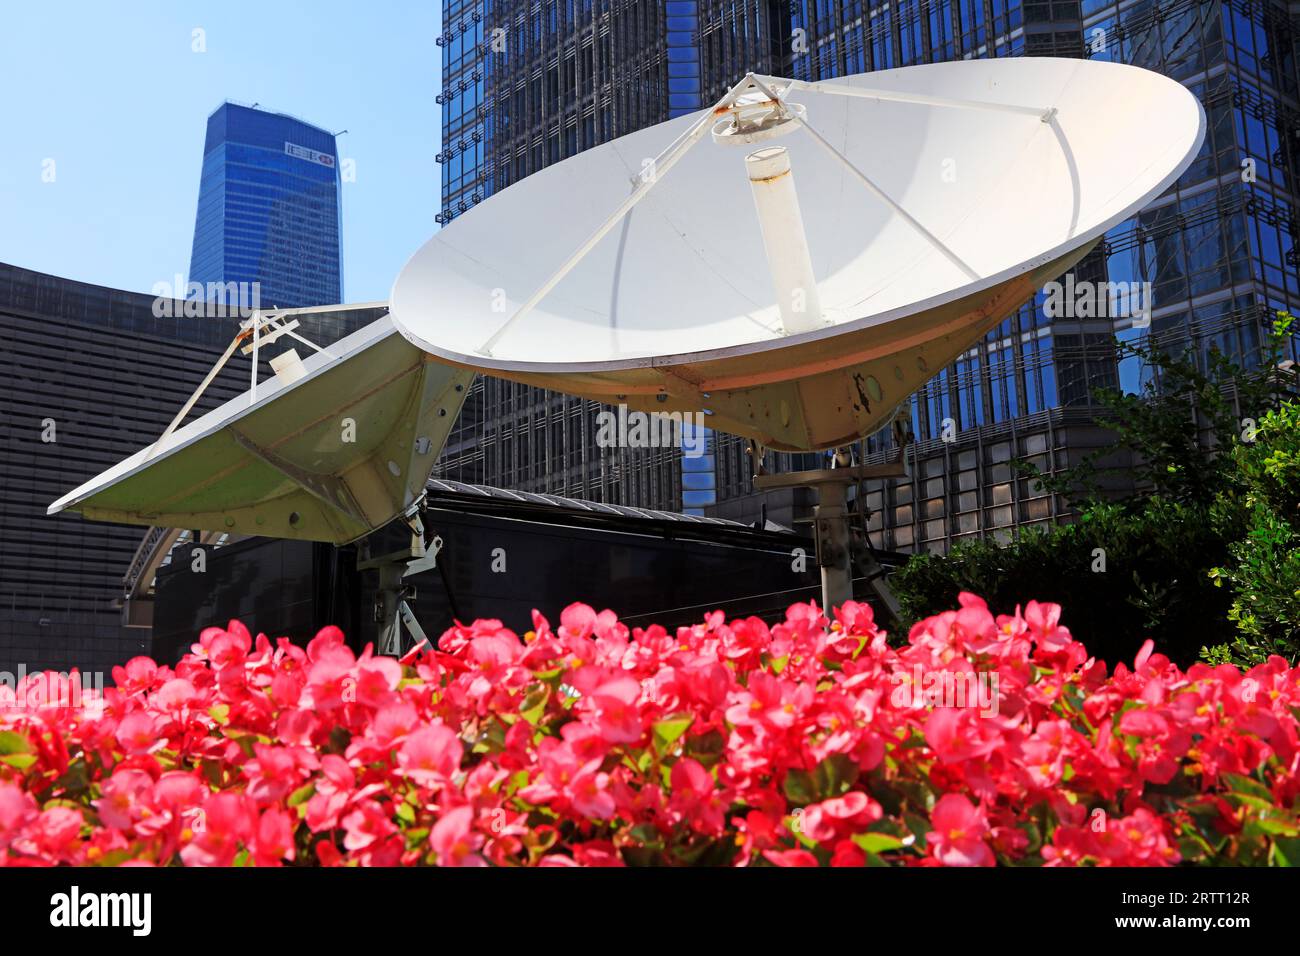 Shanghai, China - June 1, 2018: Satellite ground receiving equipment in Lujiazui, Shanghai, China Stock Photo